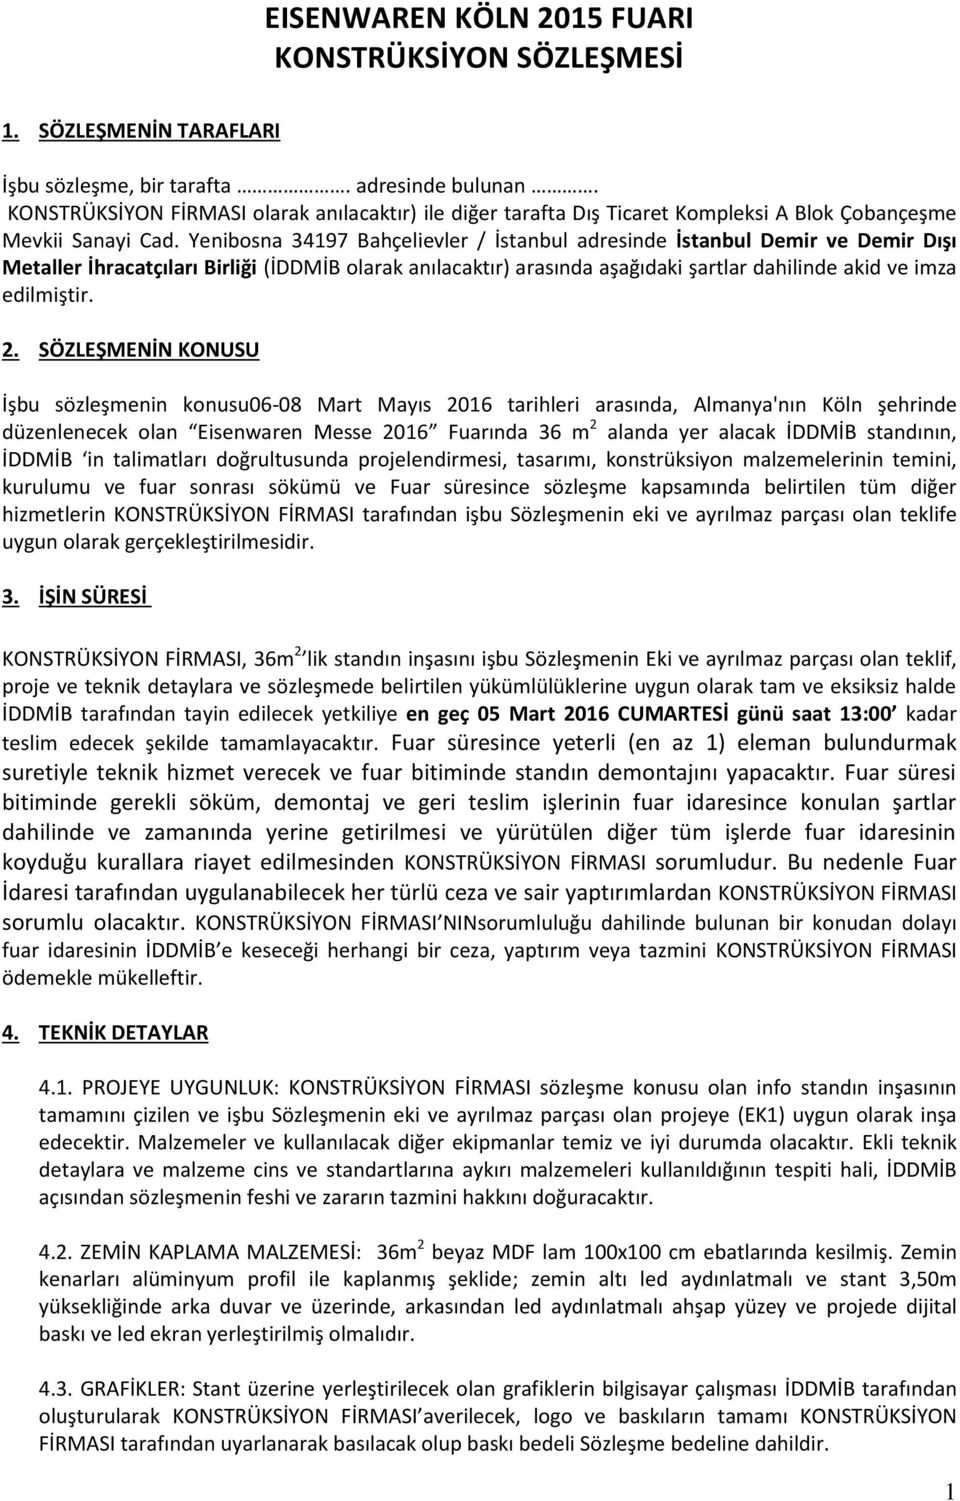 Yenibosna 34197 Bahçelievler / İstanbul adresinde İstanbul Demir ve Demir Dışı Metaller İhracatçıları Birliği (İDDMİB olarak anılacaktır) arasında aşağıdaki şartlar dahilinde akid ve imza edilmiştir.